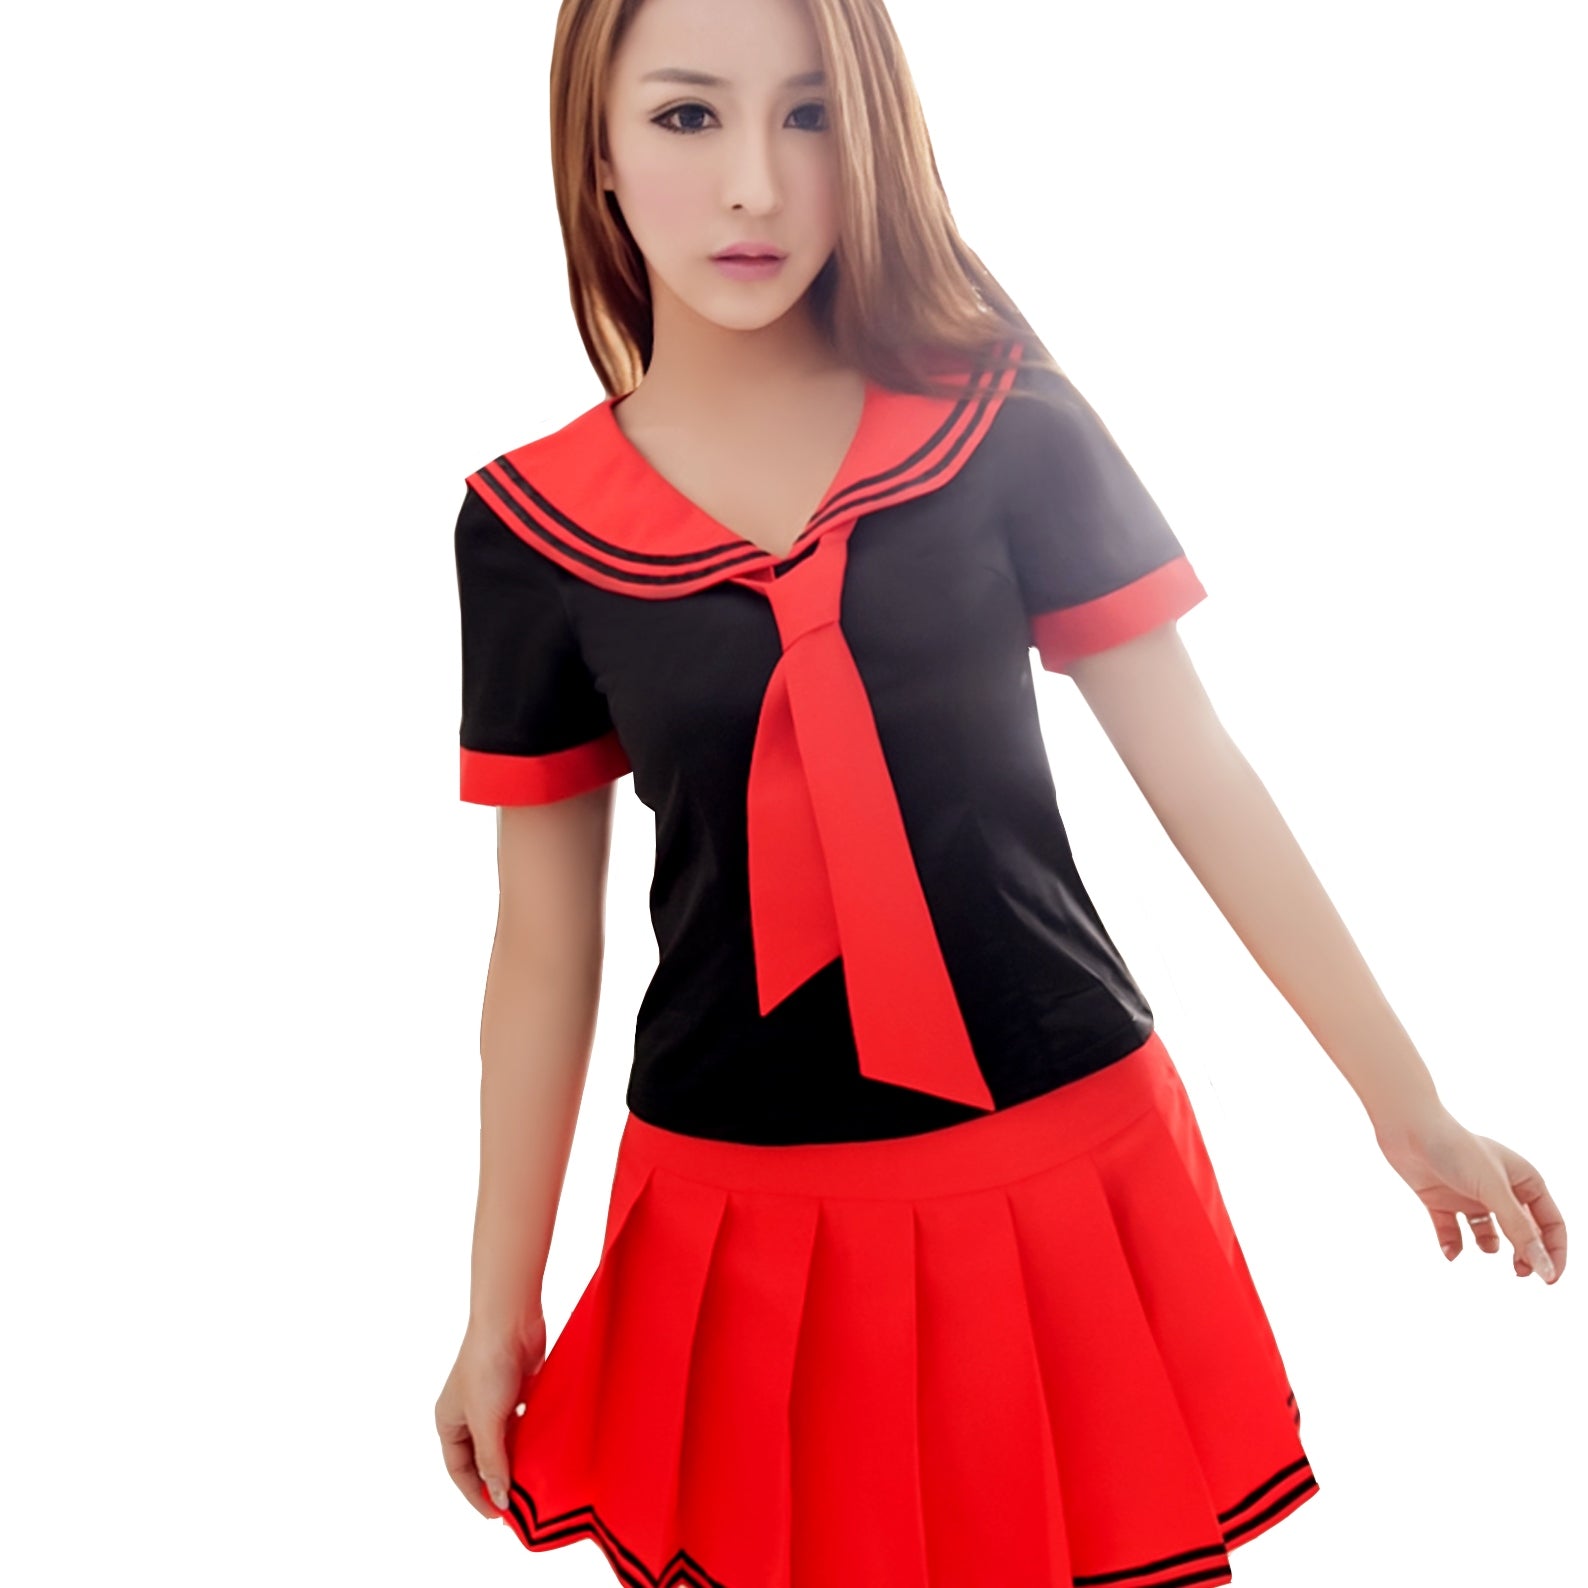 Red Schoolgirl